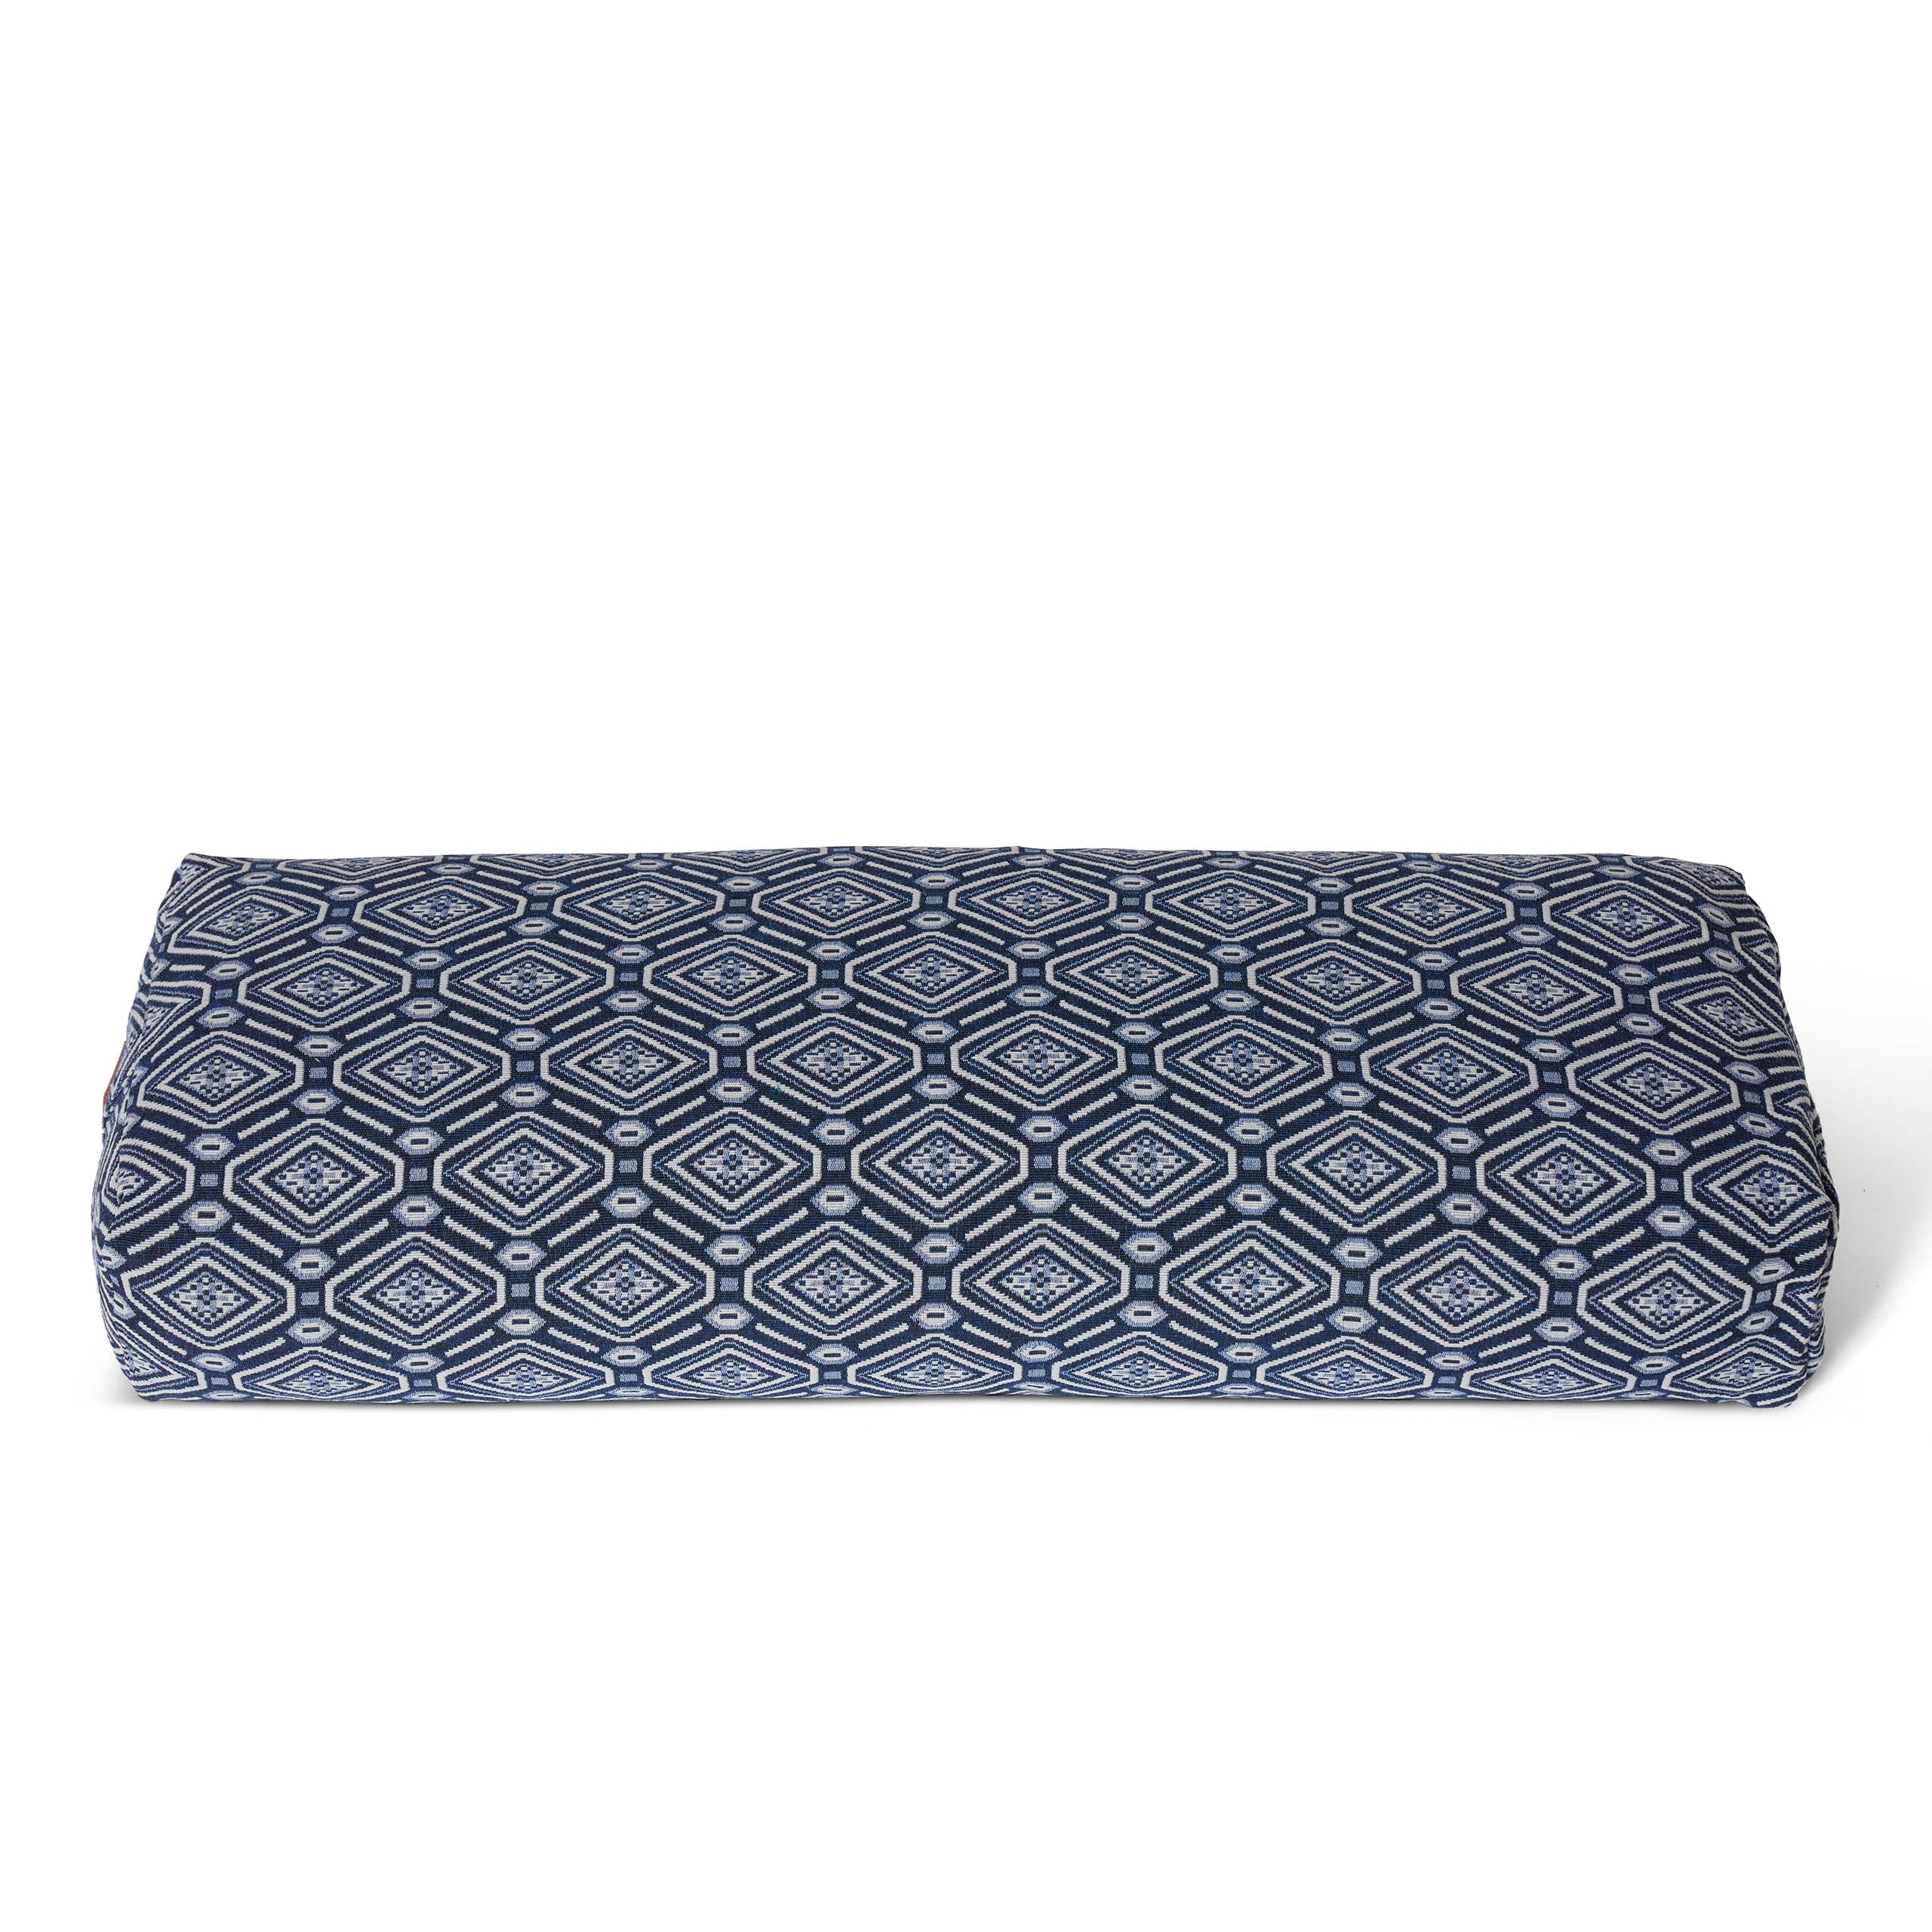 Yoga-Bolster Paravati - gefüllt mit Bio-Dinkelspelz - 67 x 22 x 13 cm - Style 6 (Blau-Weiß)